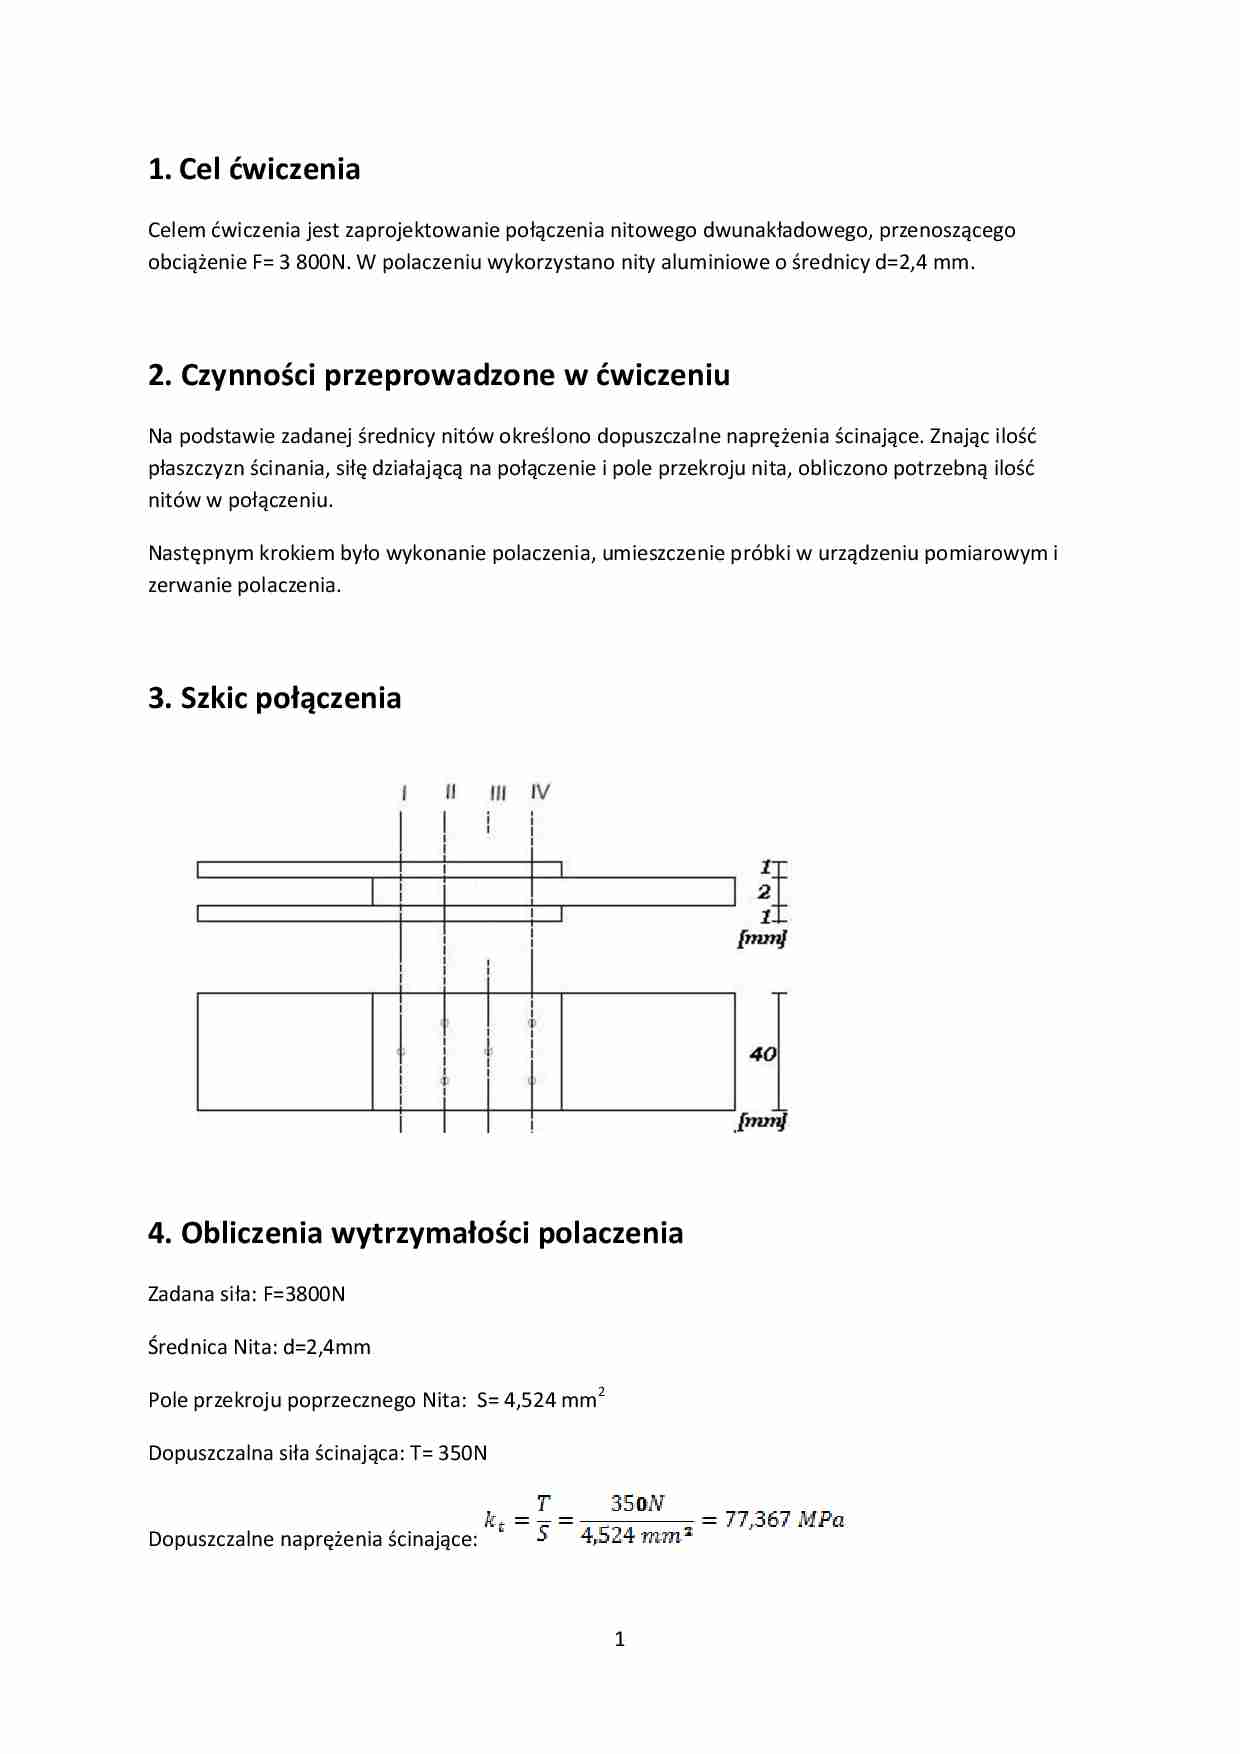 Zaprojektowanie połączenia nitowego - omówienie,sem IV - strona 1